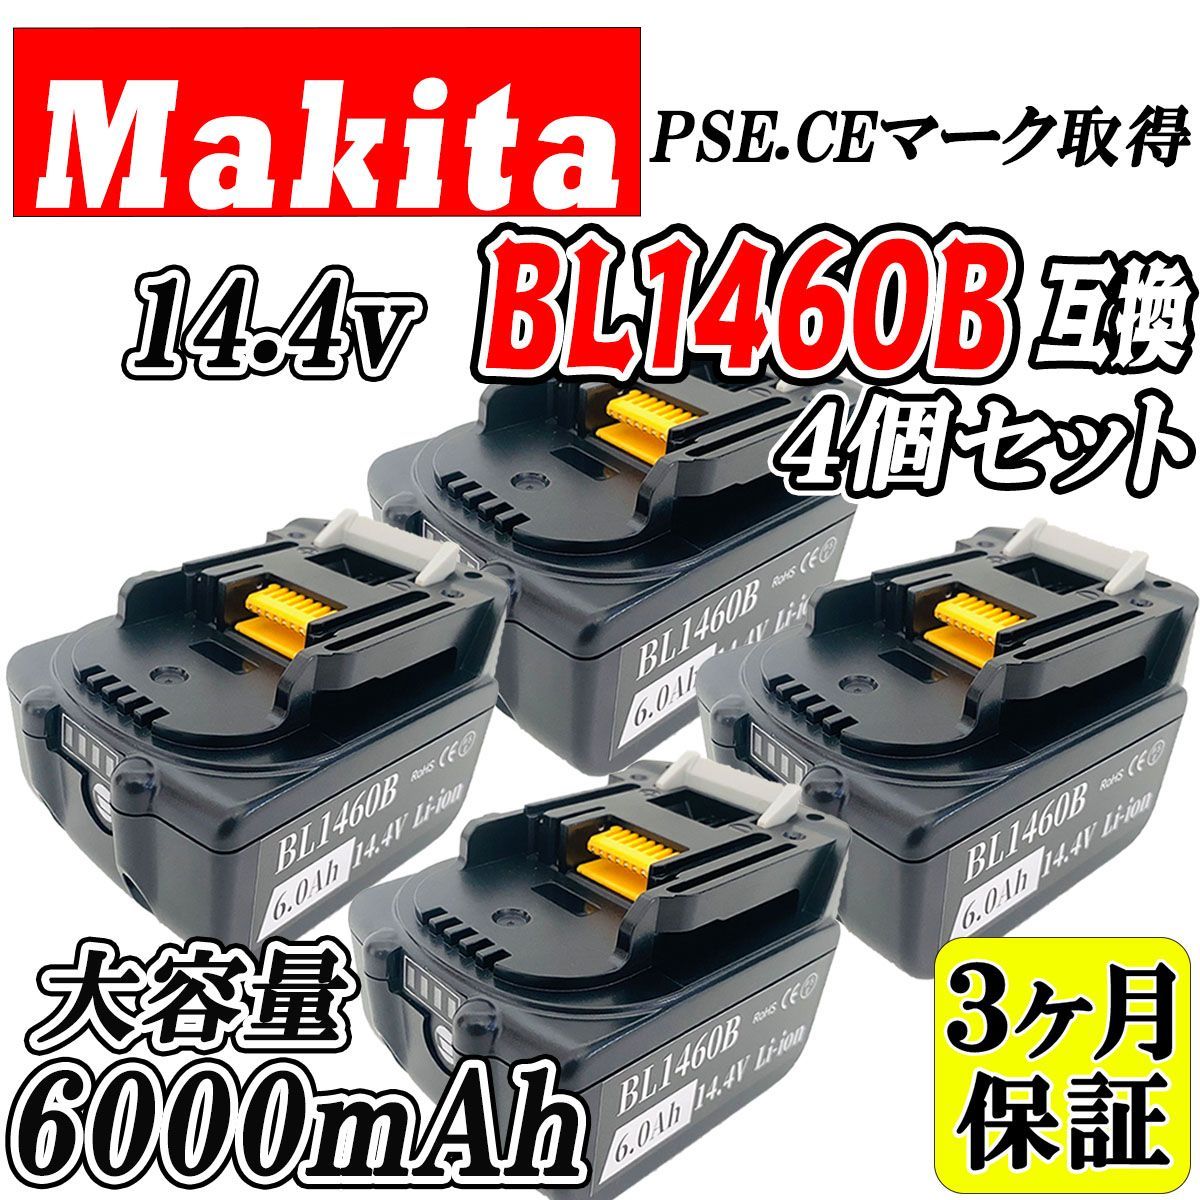 3ヶ月保証】マキタ 14.4V BL1460B 4個セット 大容量 6.0Ah 互換 バッテリー makita 残量表示付き PSE